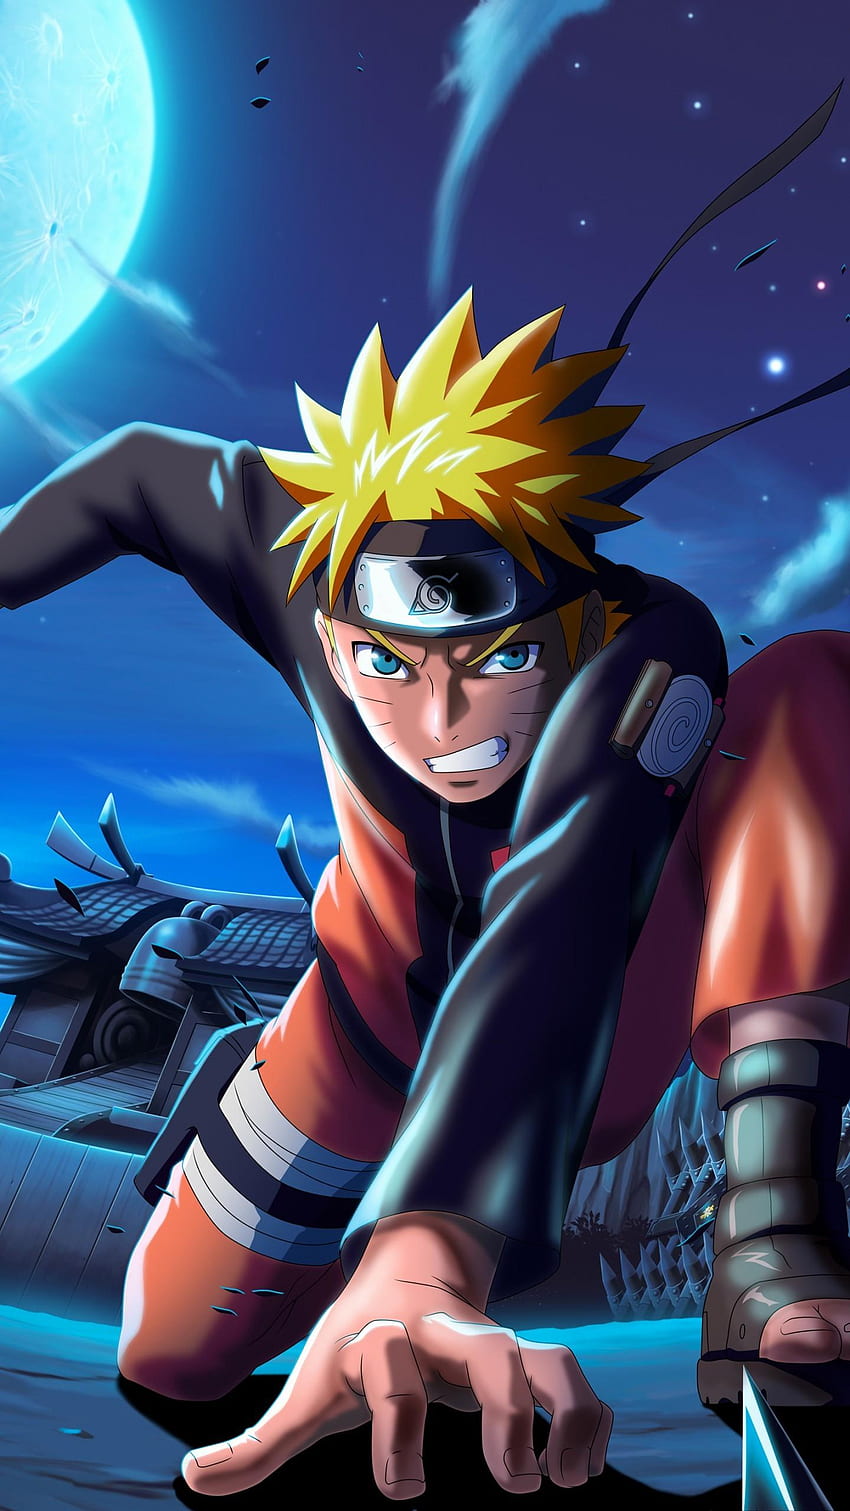 Naruto Uzumaki luôn là nhân vật được yêu thích nhất trong bộ truyện Naruto. Với hình nền điện thoại về Naruto Uzumaki, bạn sẽ thấy được những khoảnh khắc nghẹt thở của anh chàng trên chiến trường.